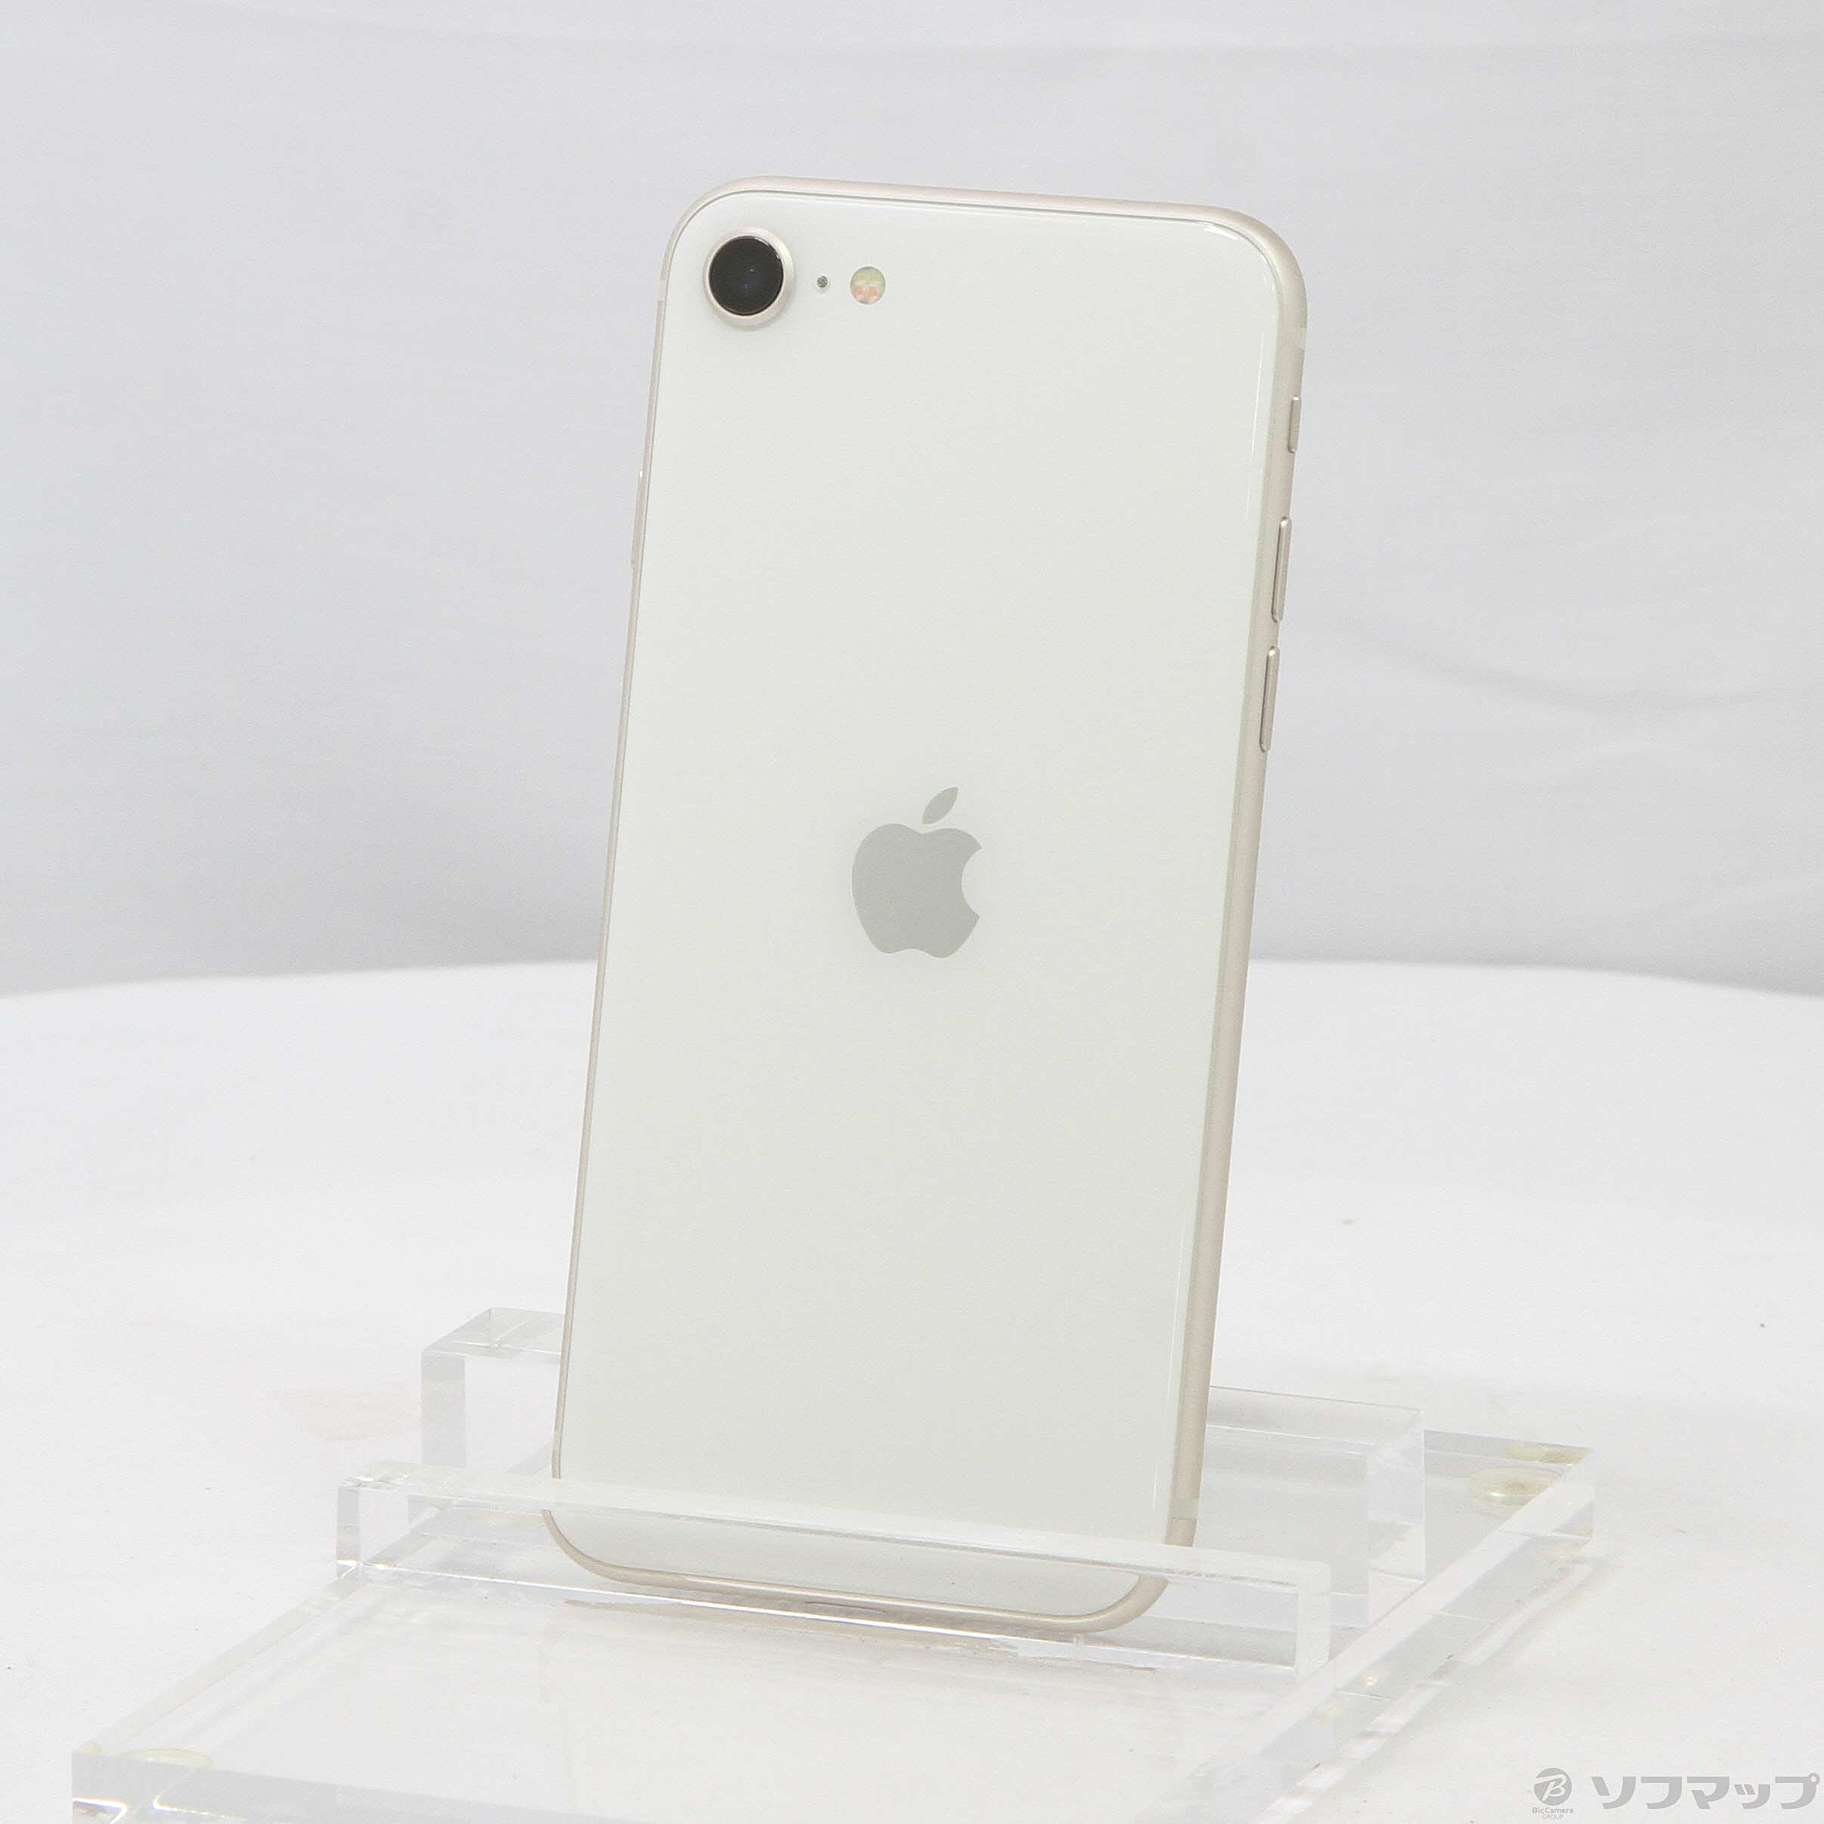 【新品未使用】iPhone SE第3世代 64GB SIMフリー スターライト - www.parrocchiemolfetta.it